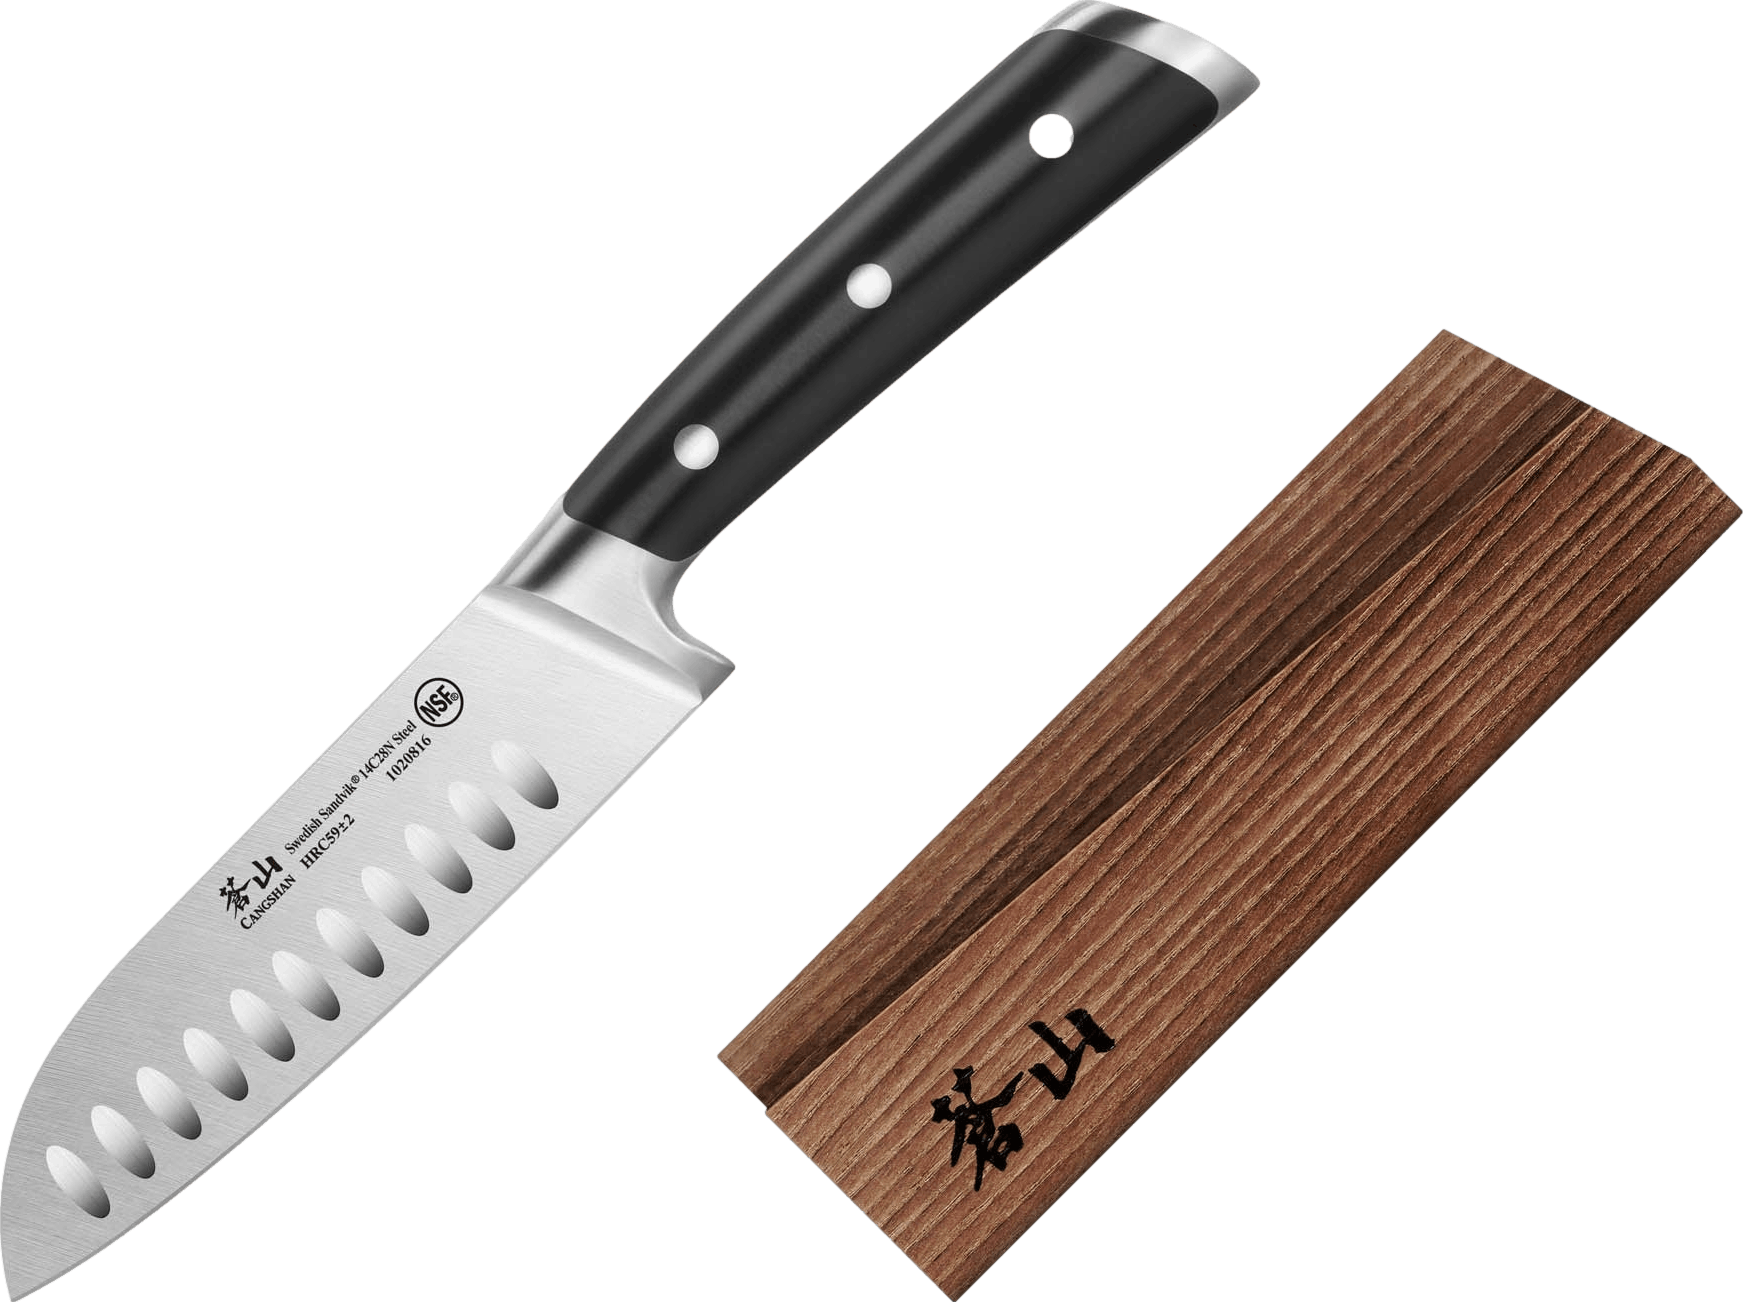 Cangshan TS Series Santoku Knife and Wood Sheath Set, 7"